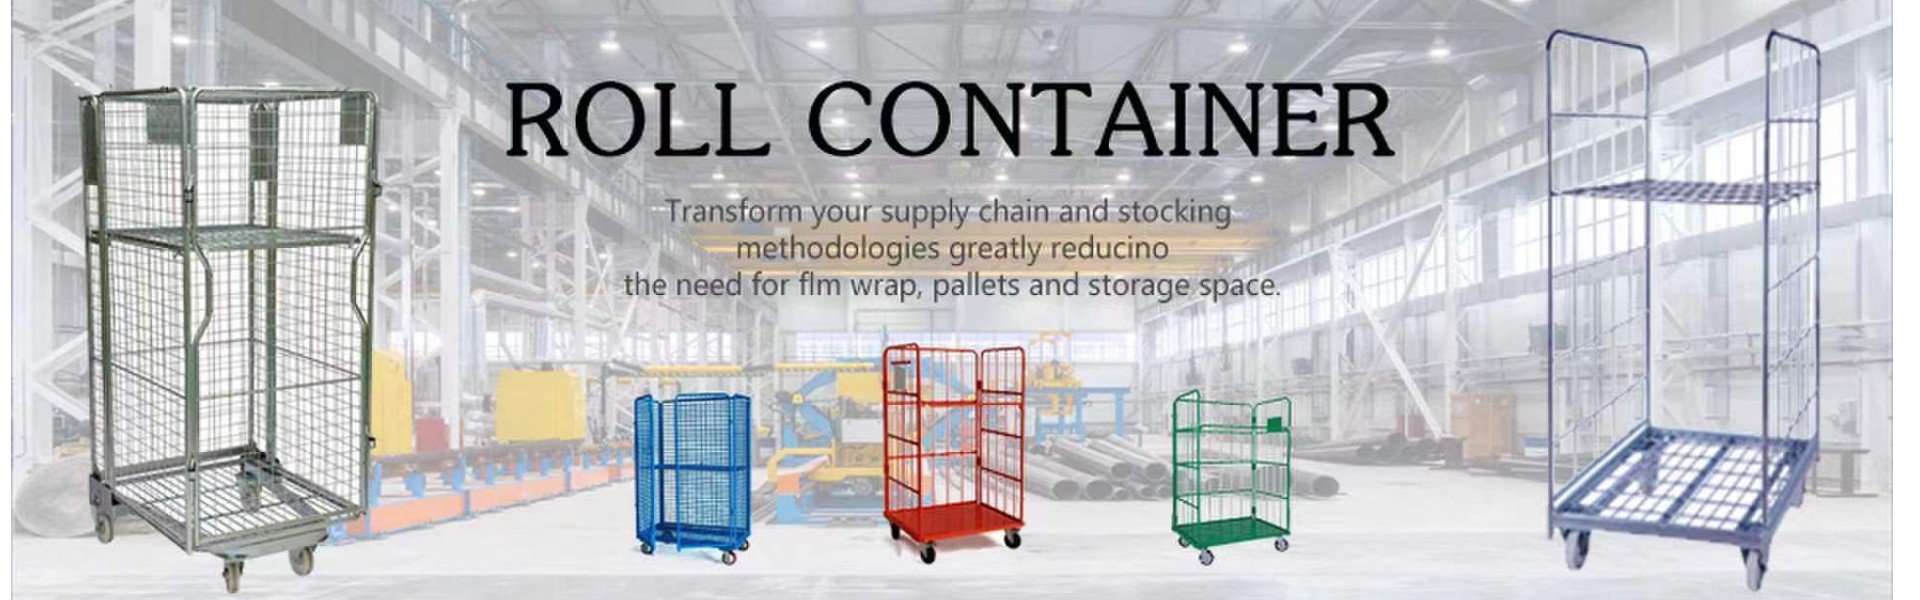 롤 컨테이너, 와이어 컨테이너, 케이지 팔레트,Qingdao Rewell Logistics Equipment Co., Ltd